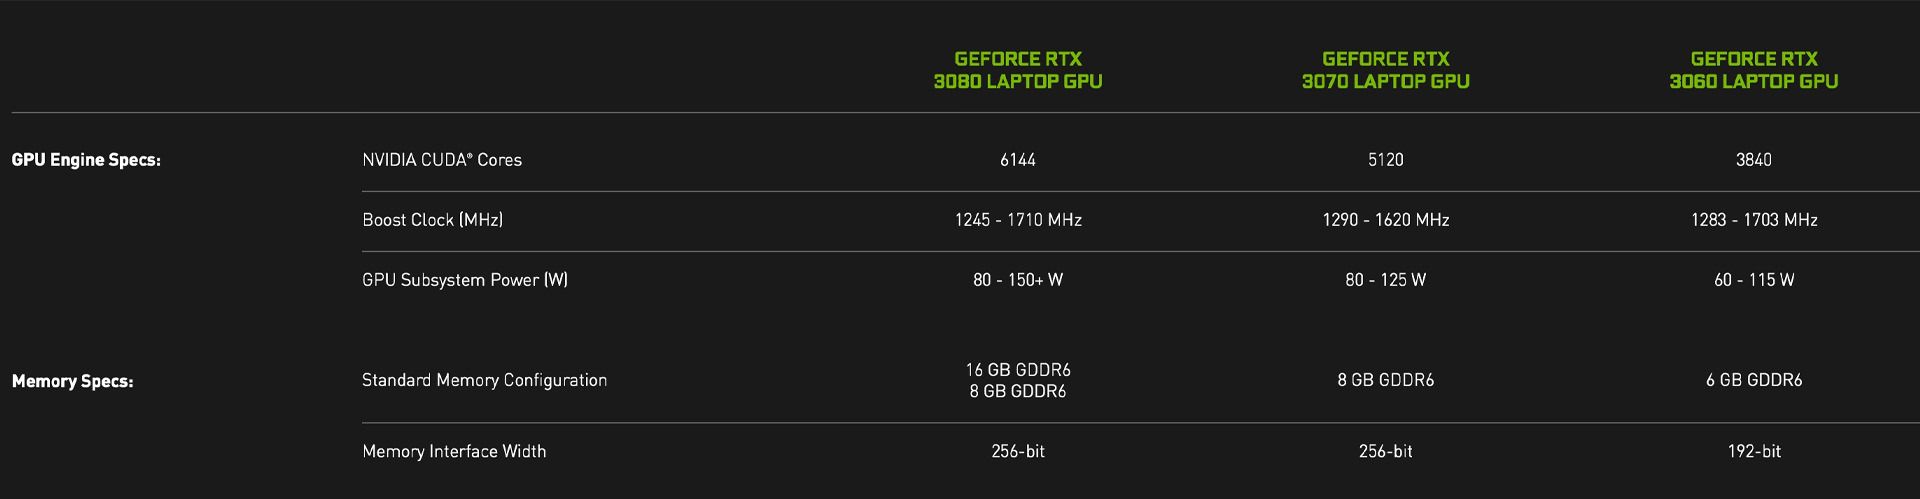 مرجع متخصصين ايران مشخصات پردازنده گرافيكي RTX 3000 لپ تاپ انويديا در سايت رسمي Nvidia